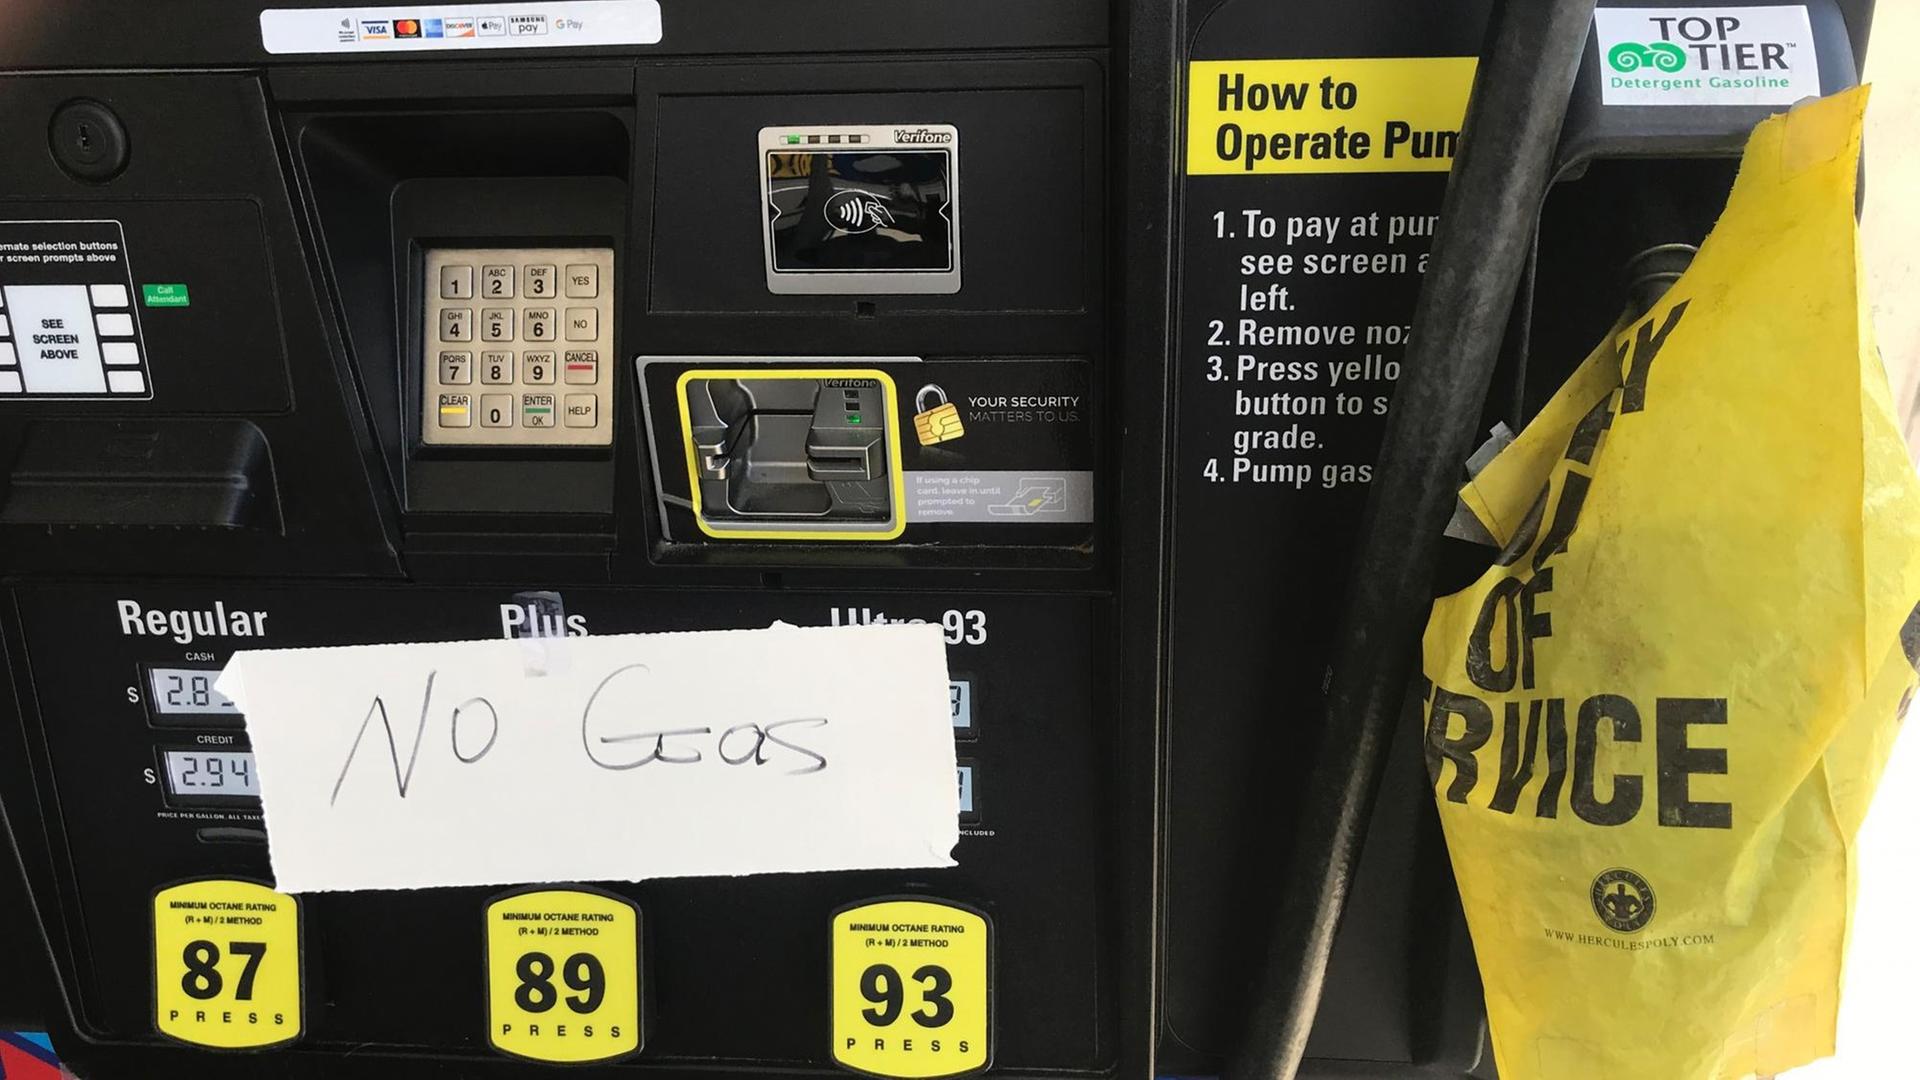 "No Gas" steht an einer Tank-Stelle in den USA. Das ist Englisch und bedeutet: "Kein Benzin"